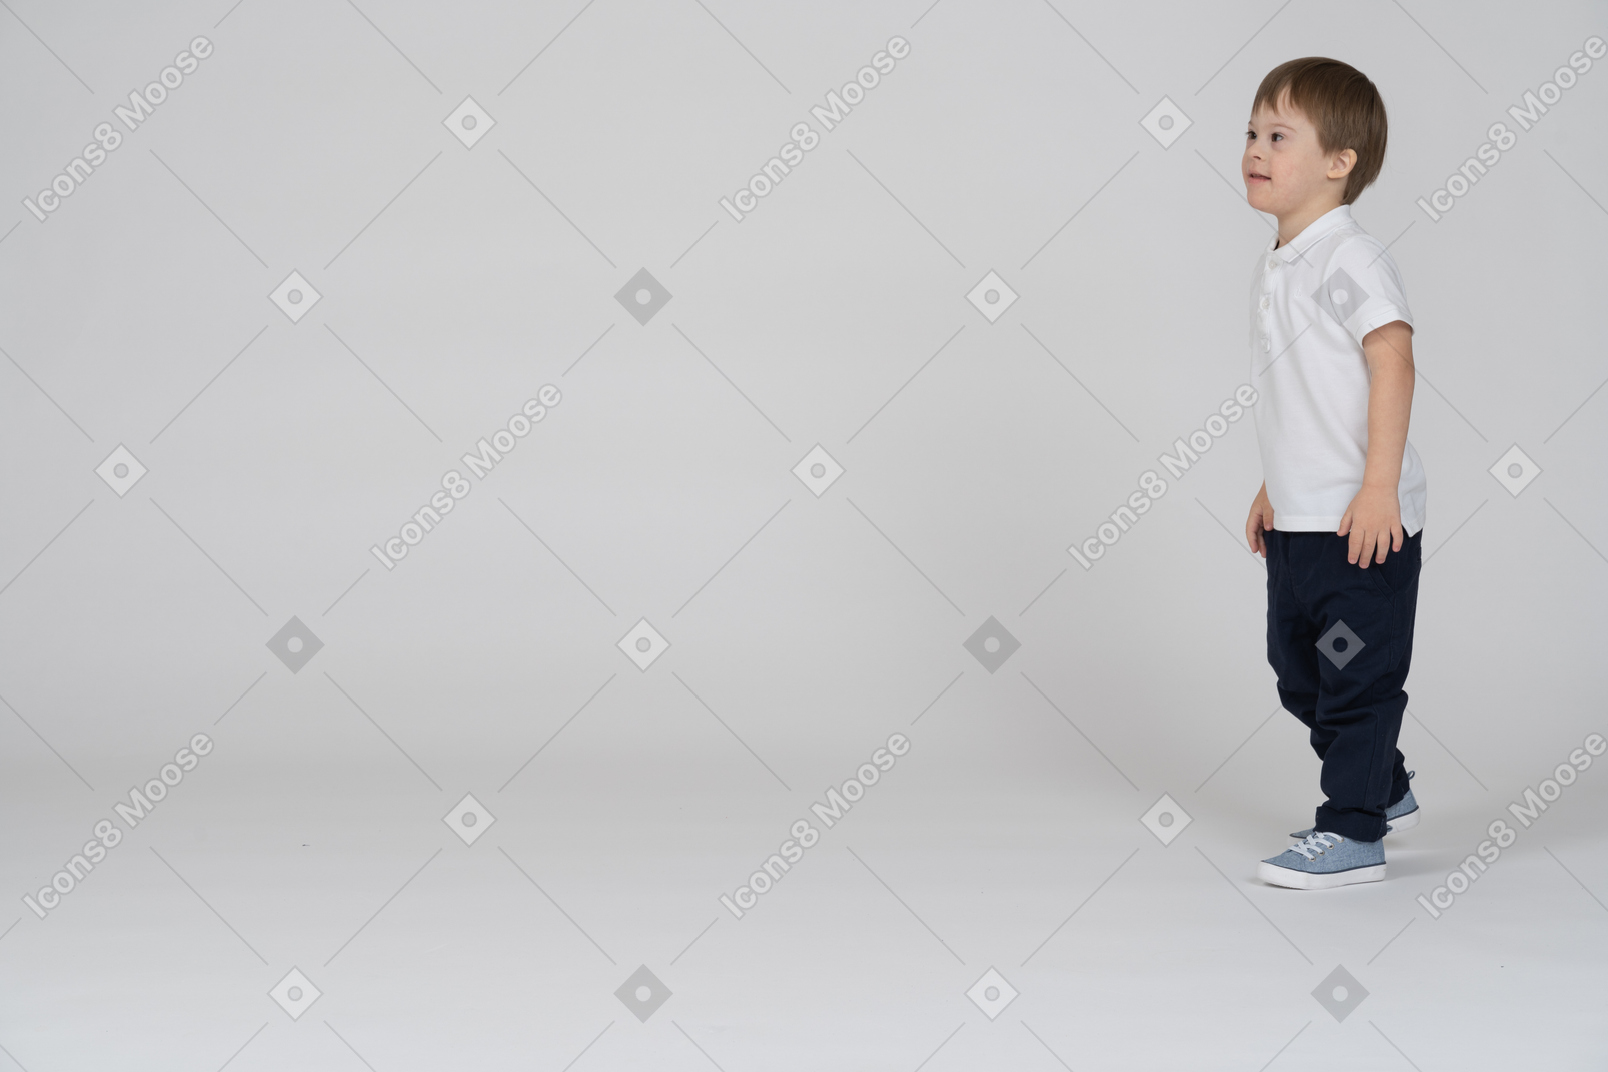 Three-quarter view of a boy walking forward